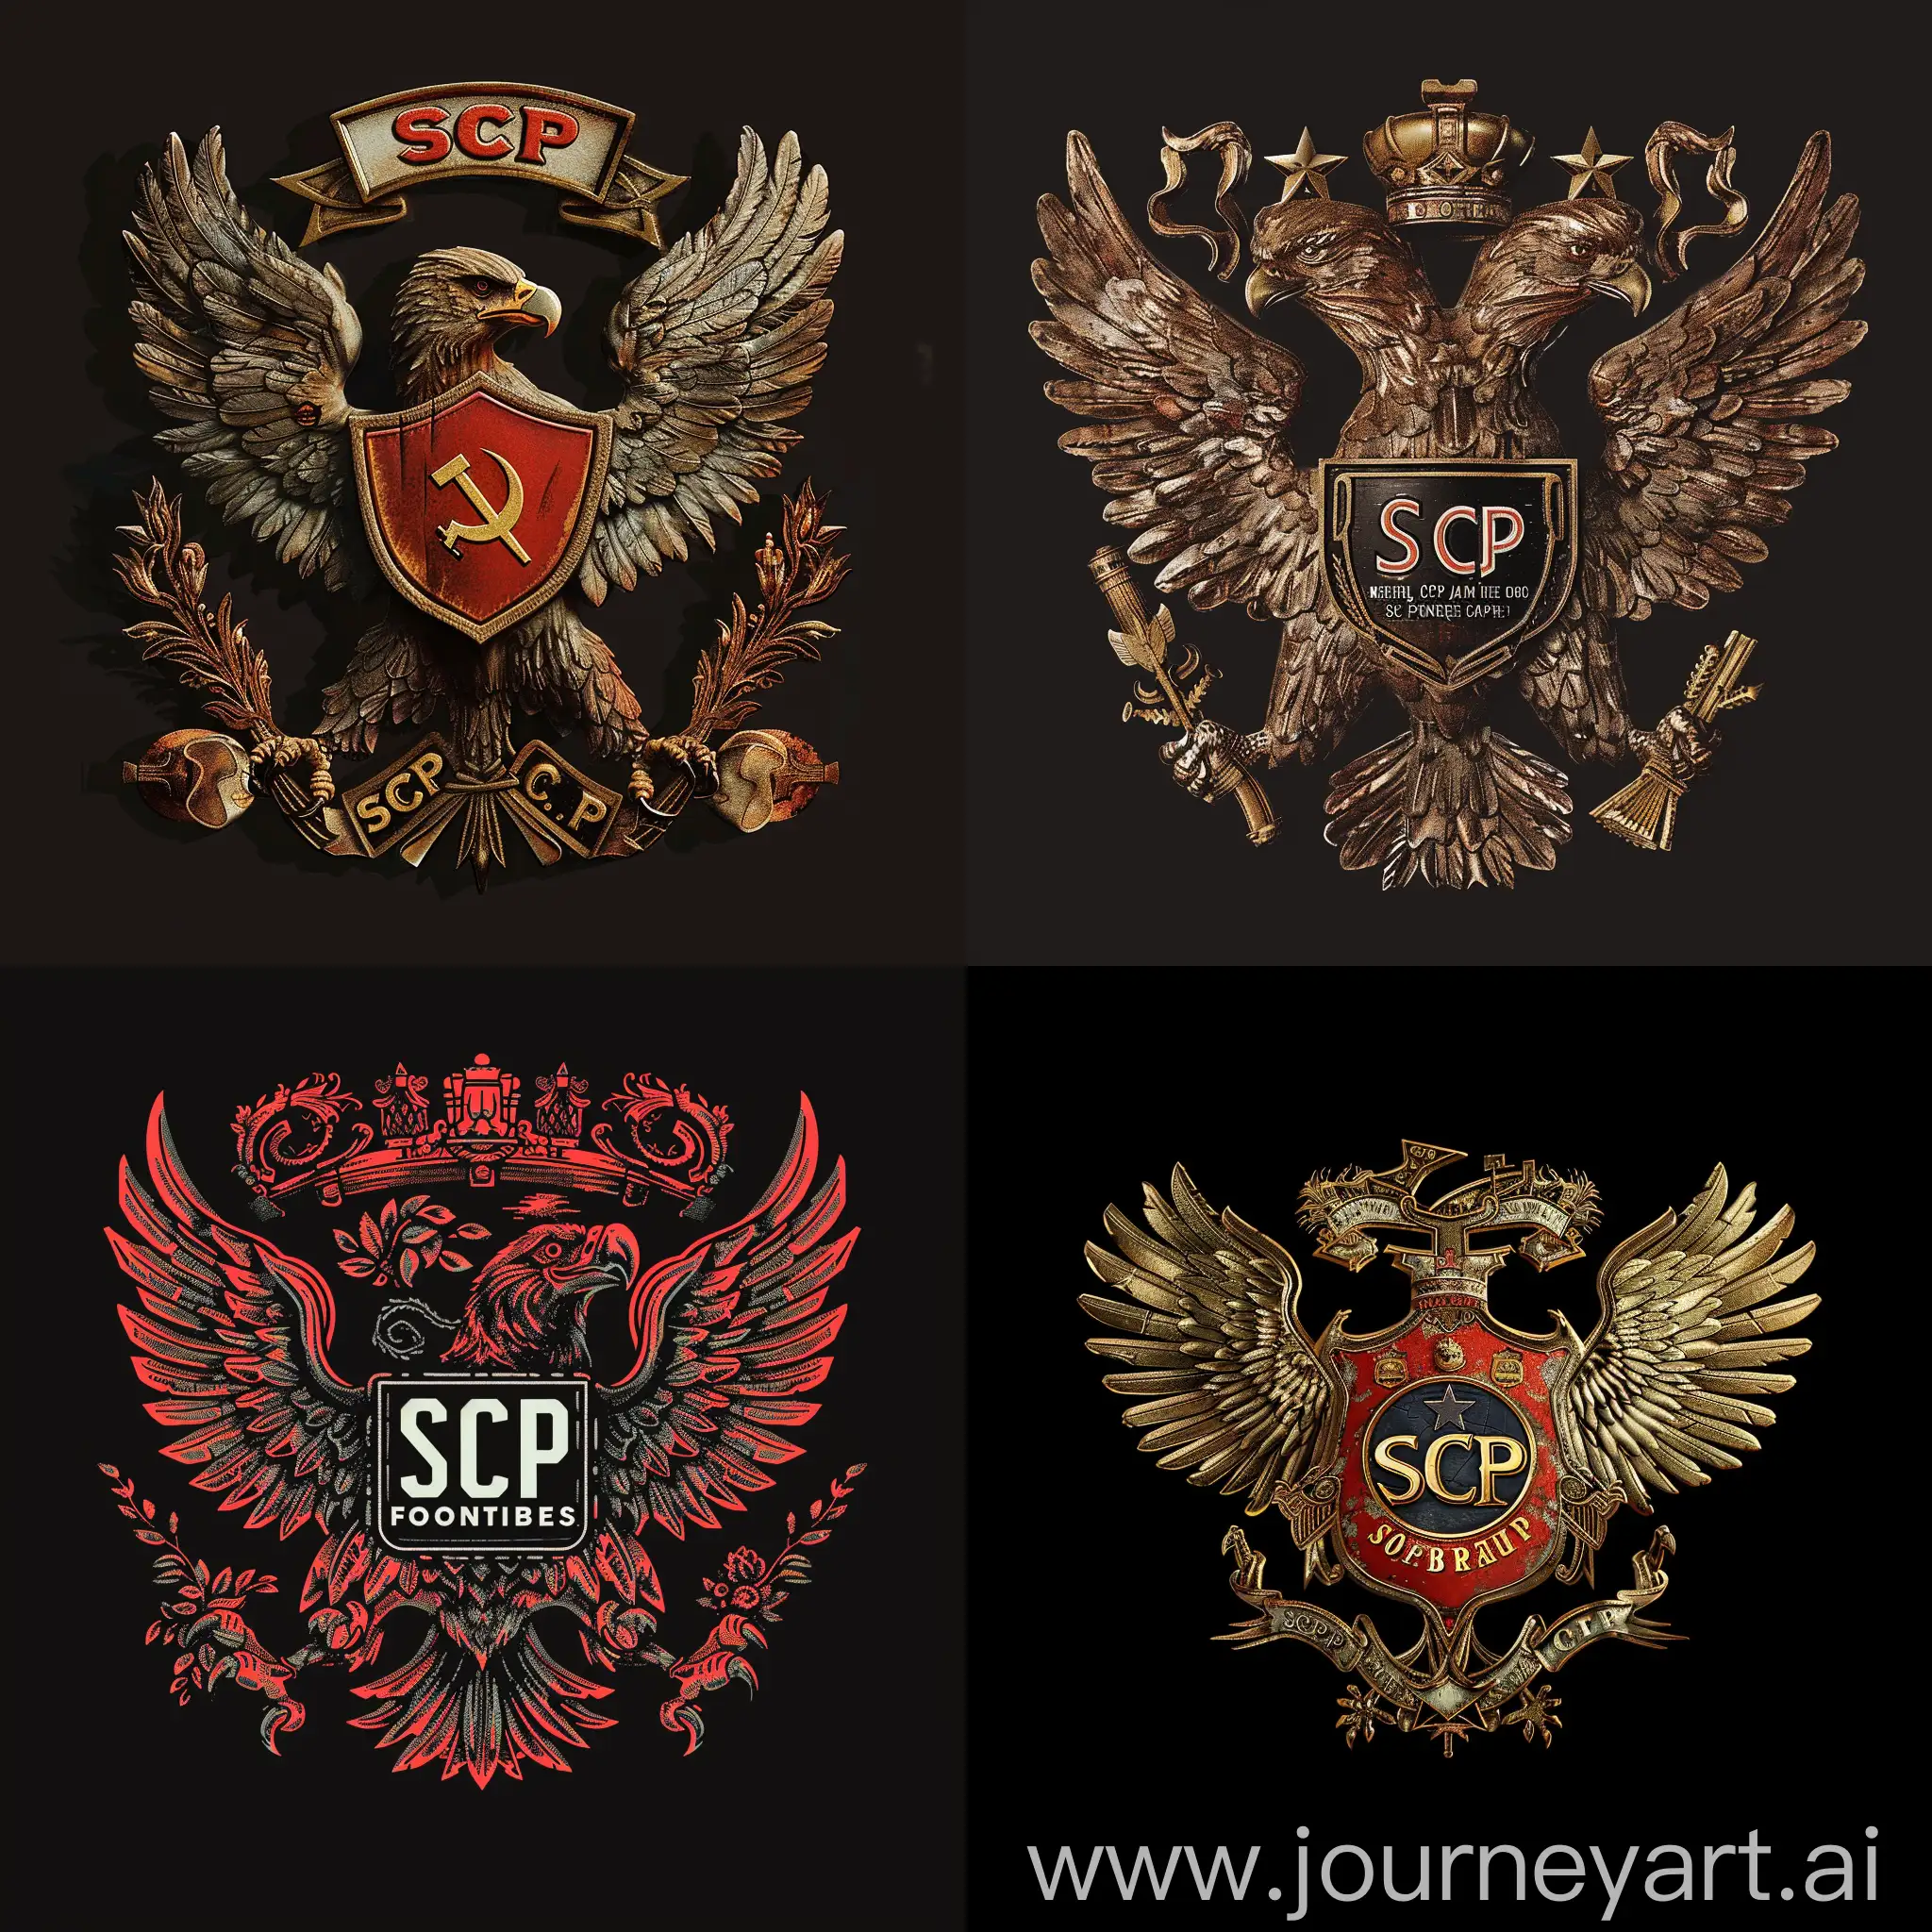 Сгенирируй коммунистического орла в виде герба связанное с scp фондом чтоб по середине была надпись scp